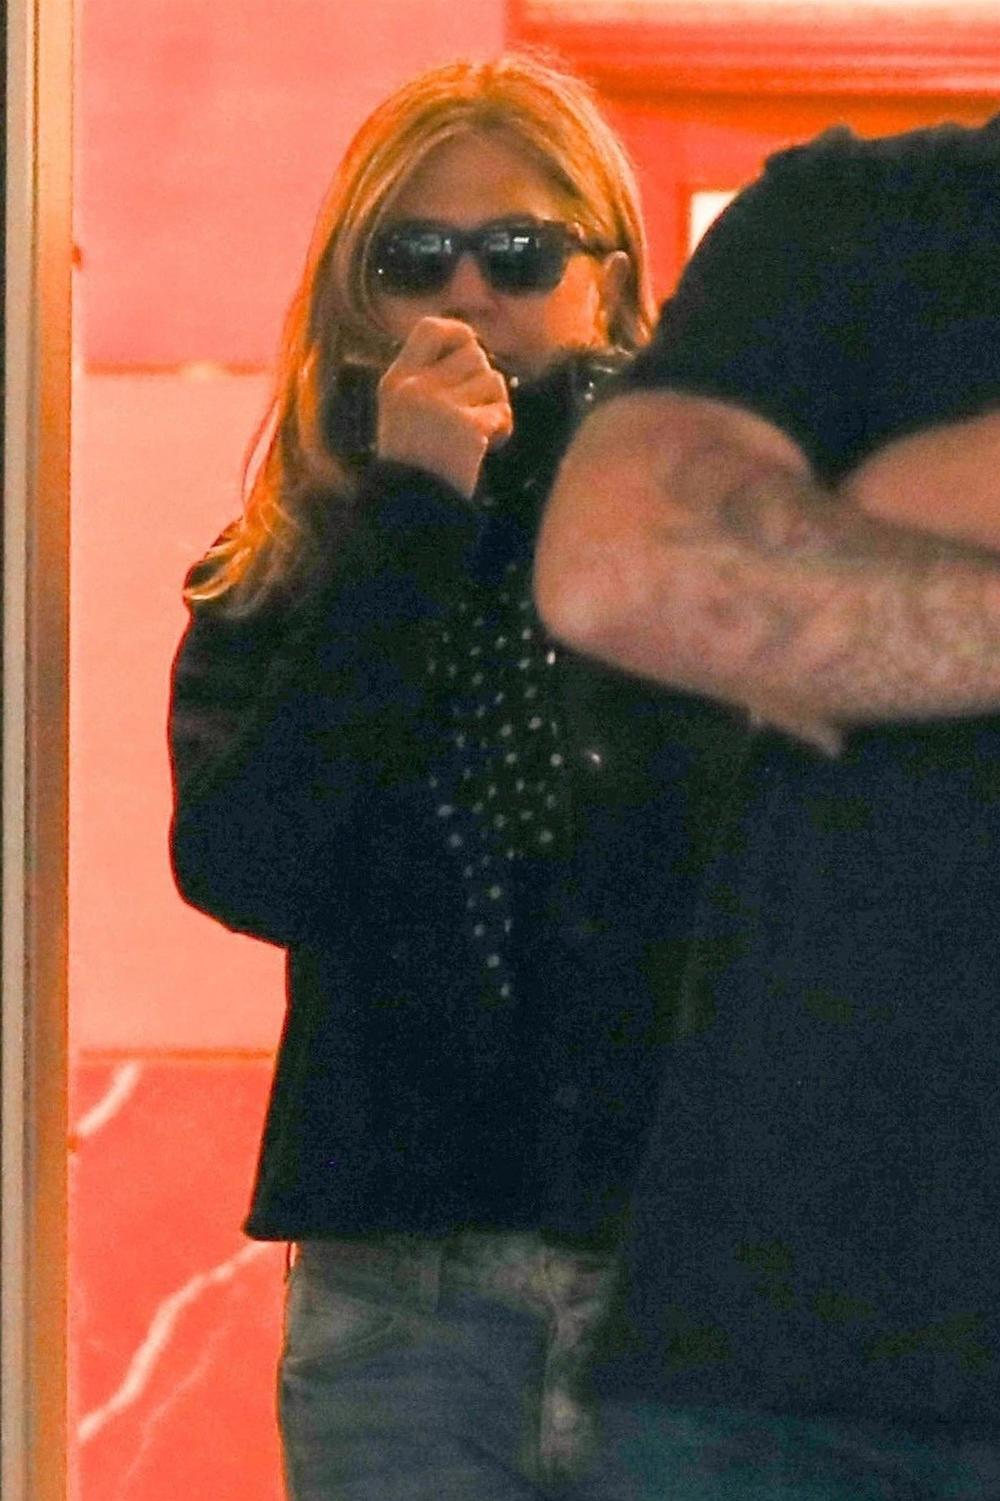 <p>Tokom božićne kupovine, glumac Džastin Teru je bezbrižno ćaskao s ženom nepoznatom javnosti, a ni njegova supruga Dženifer Aniston nije bila sama...</p>